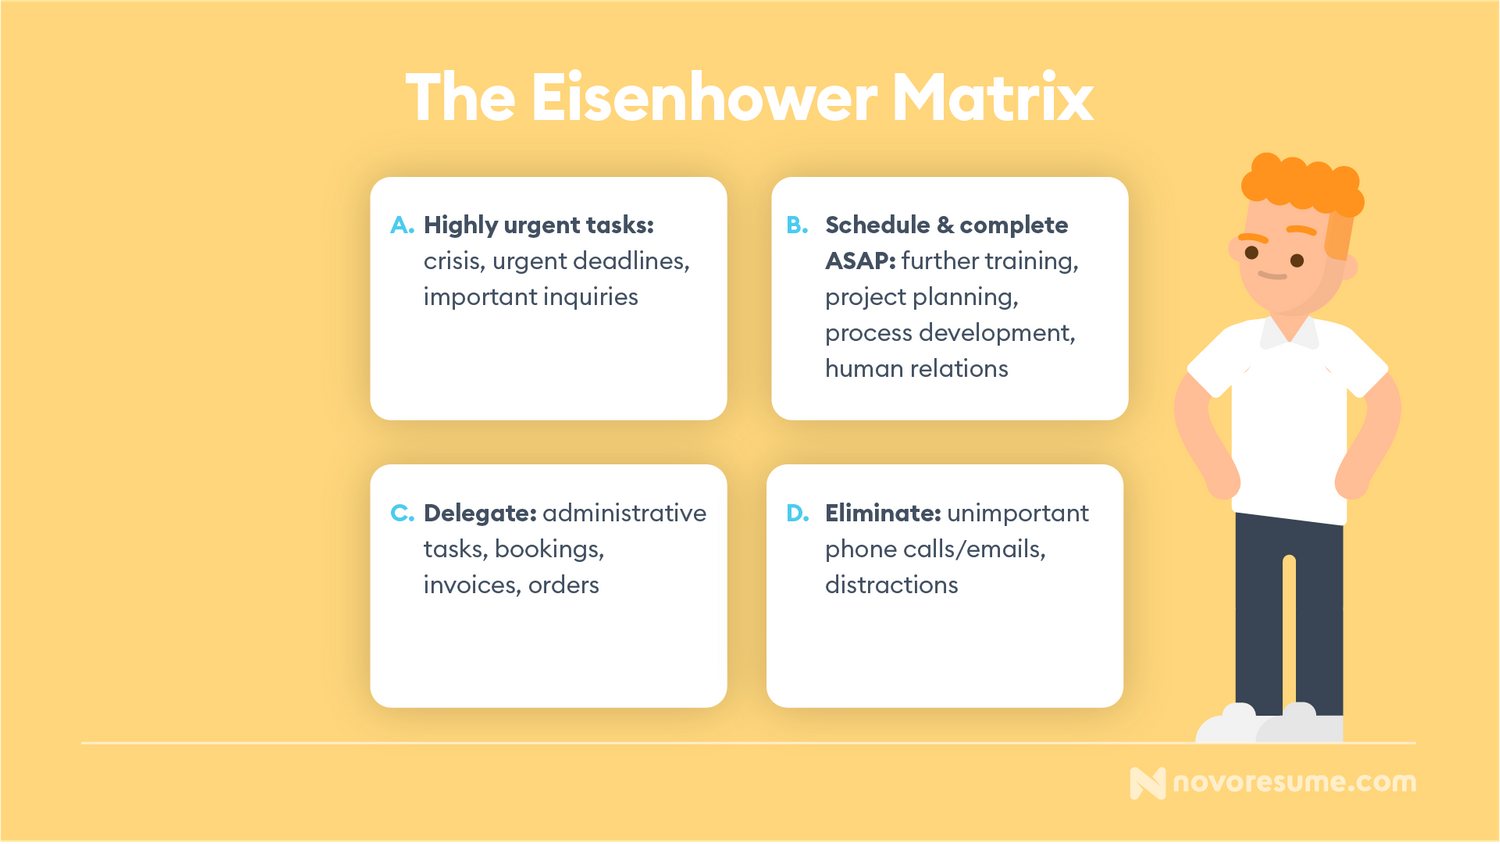 Eisenhower-Matrix